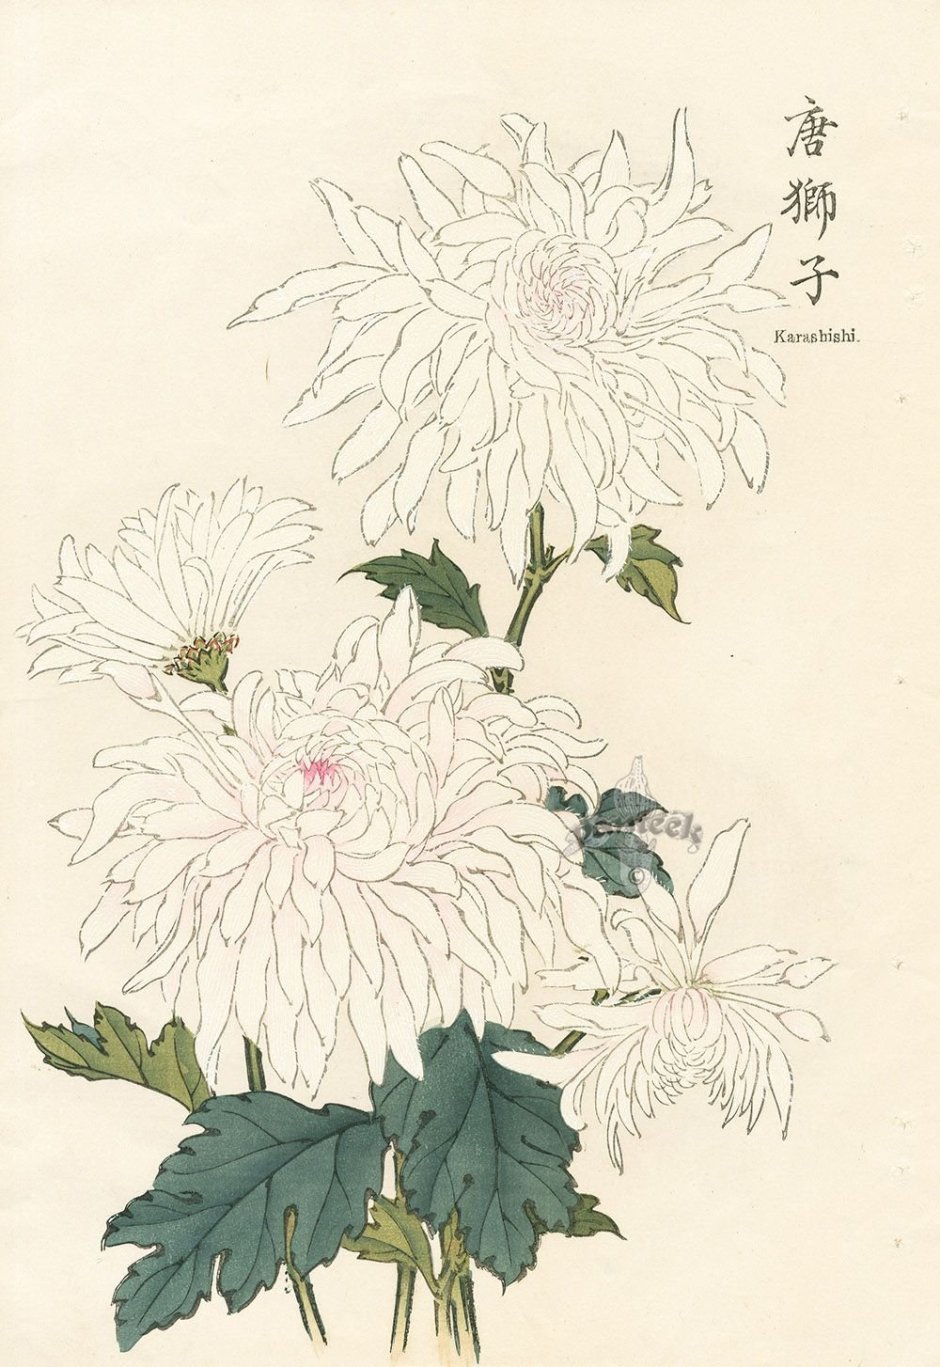 Белые японские хризантемы